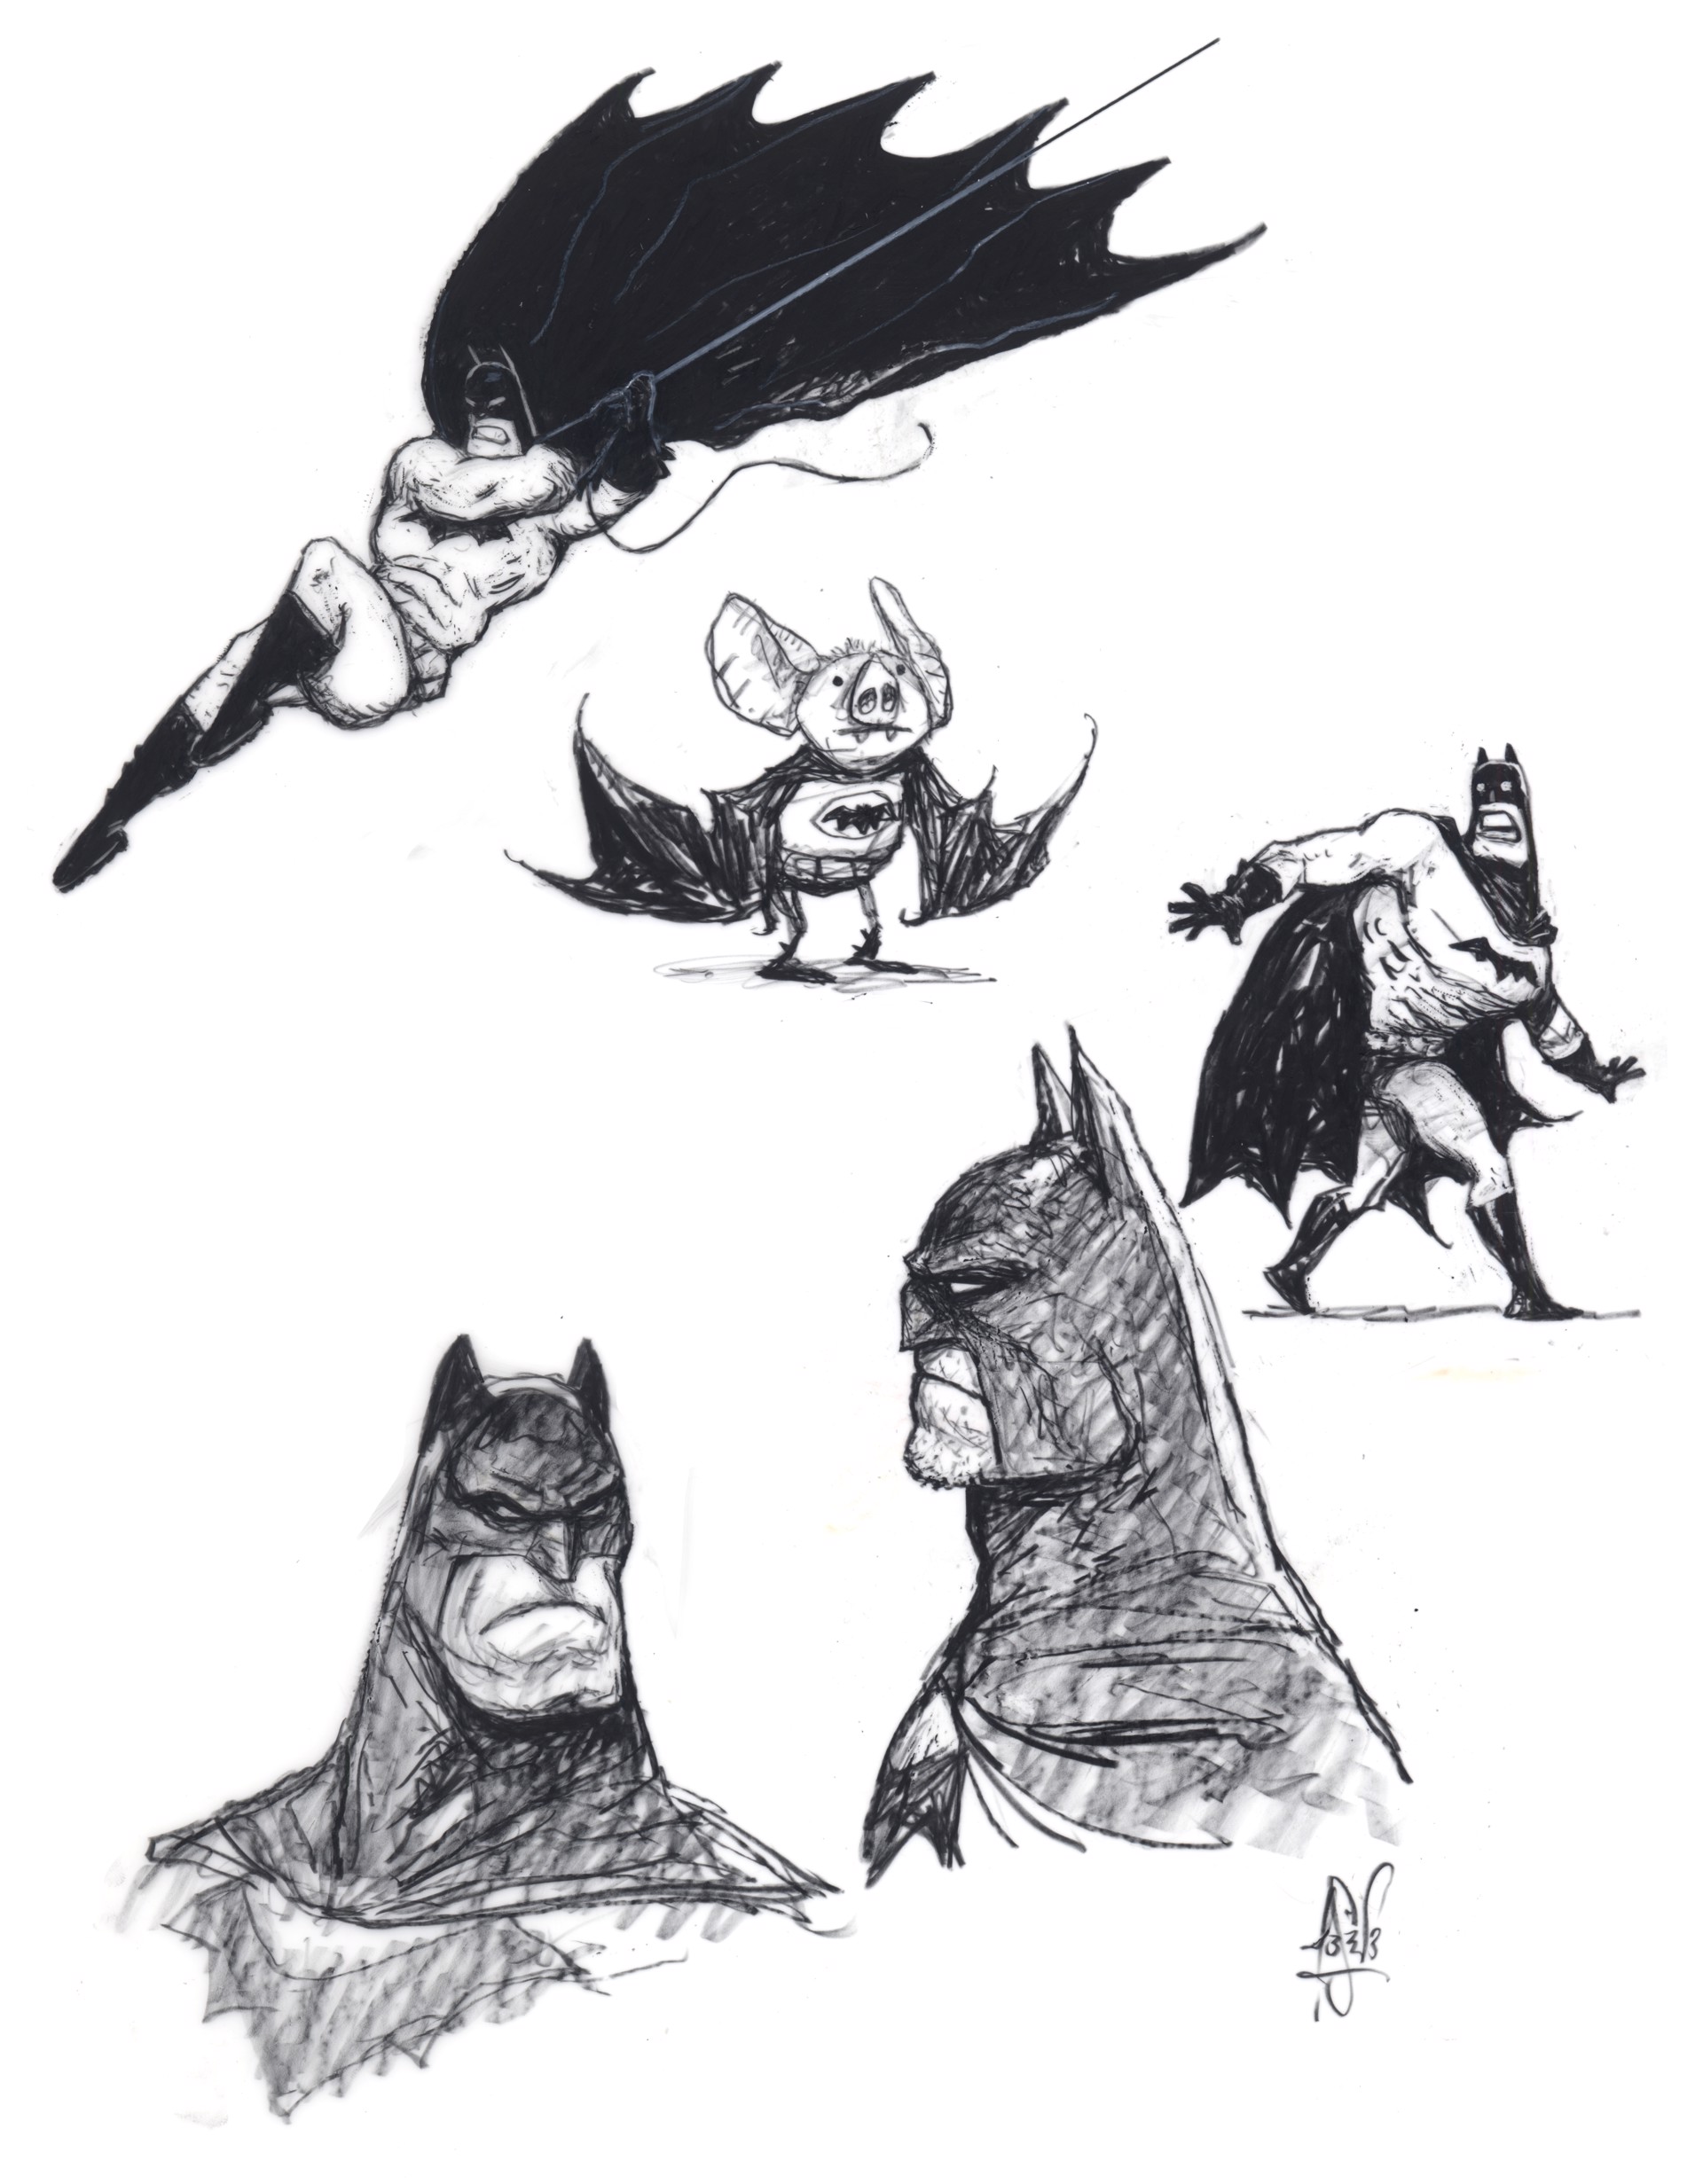 Batmen by Peter de Sève